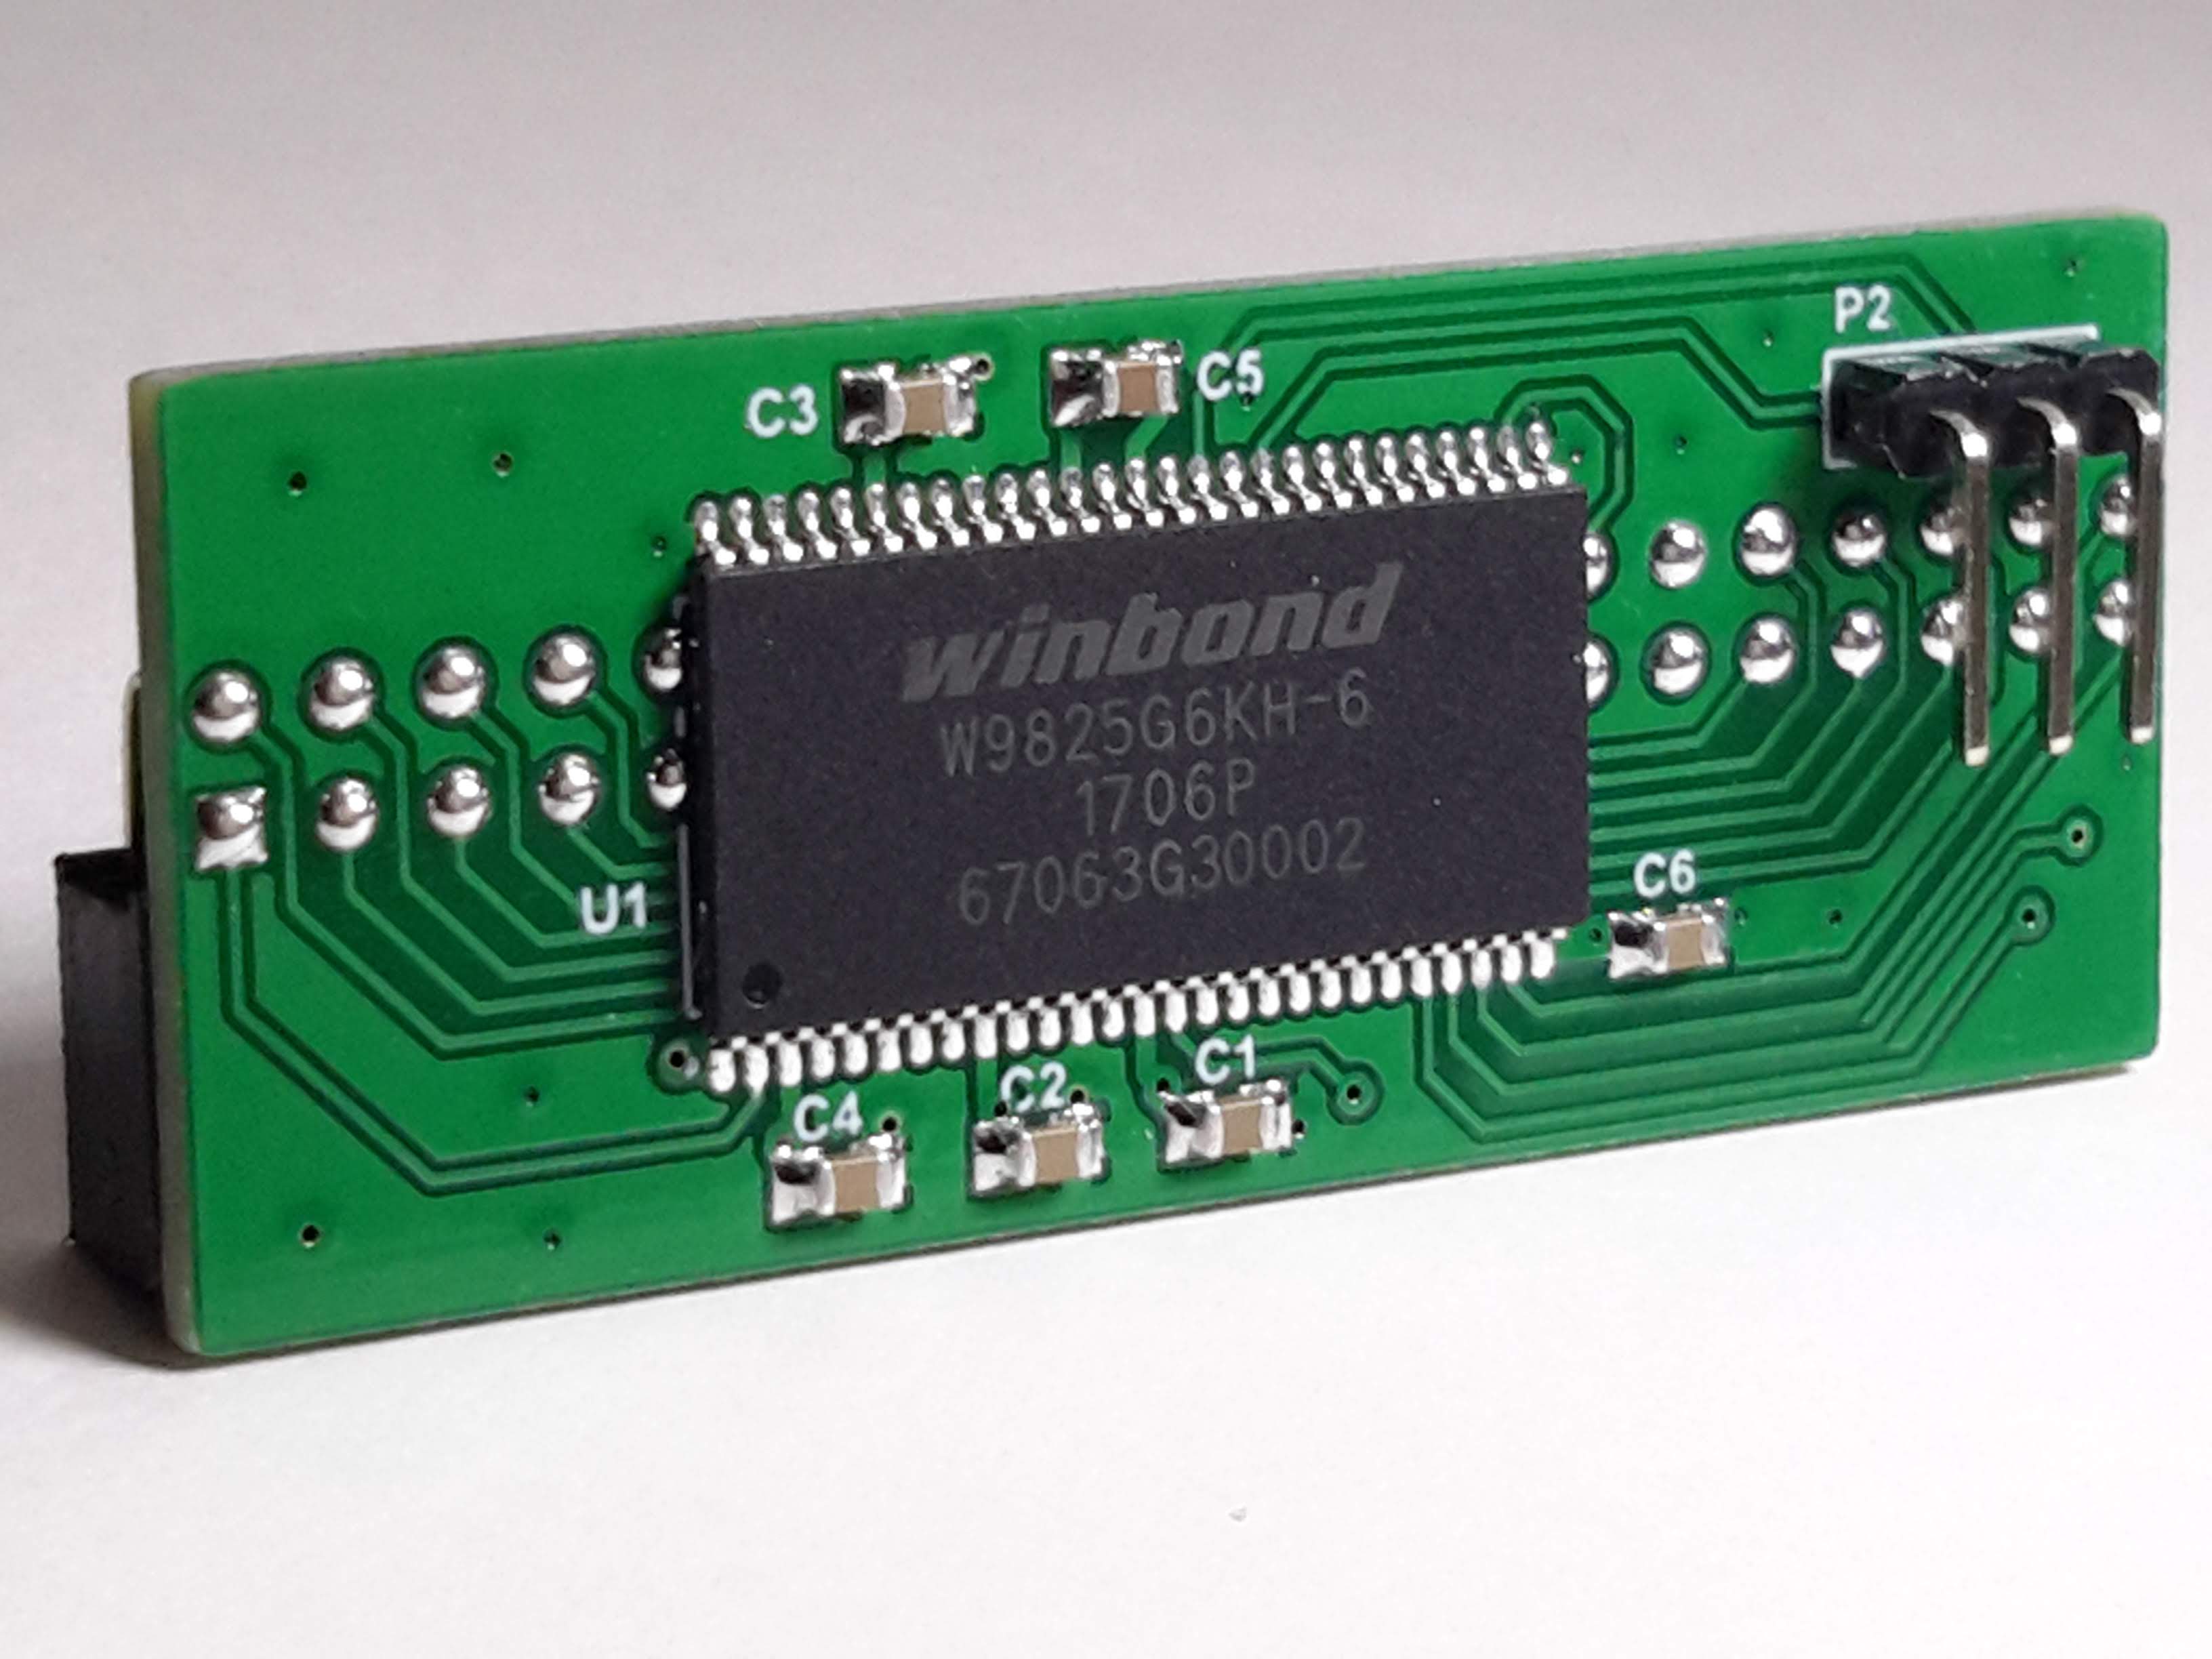 SDRAM XS for MiSTer DE10-Nano FPGA Board (Winbond) - Click Image to Close